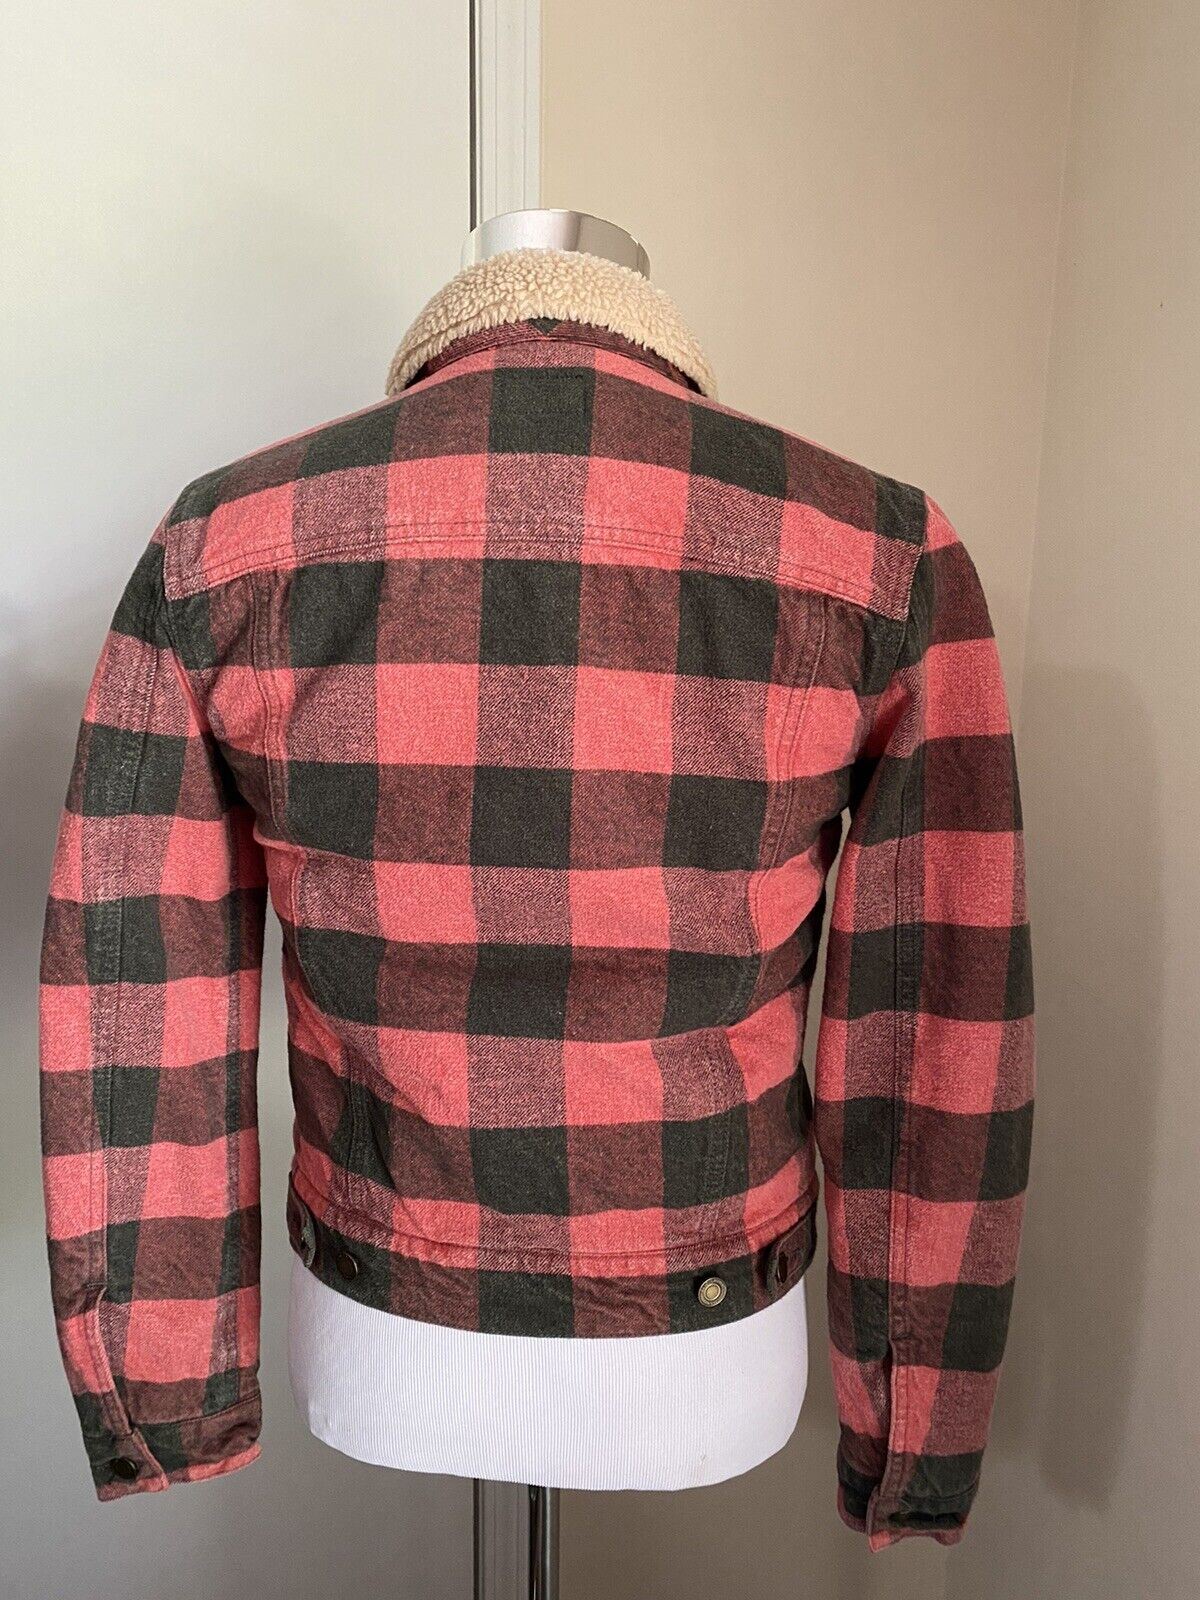 Новая мужская джинсовая куртка в клетку Saint Laurent за 3190 долларов США, красный/черный, L